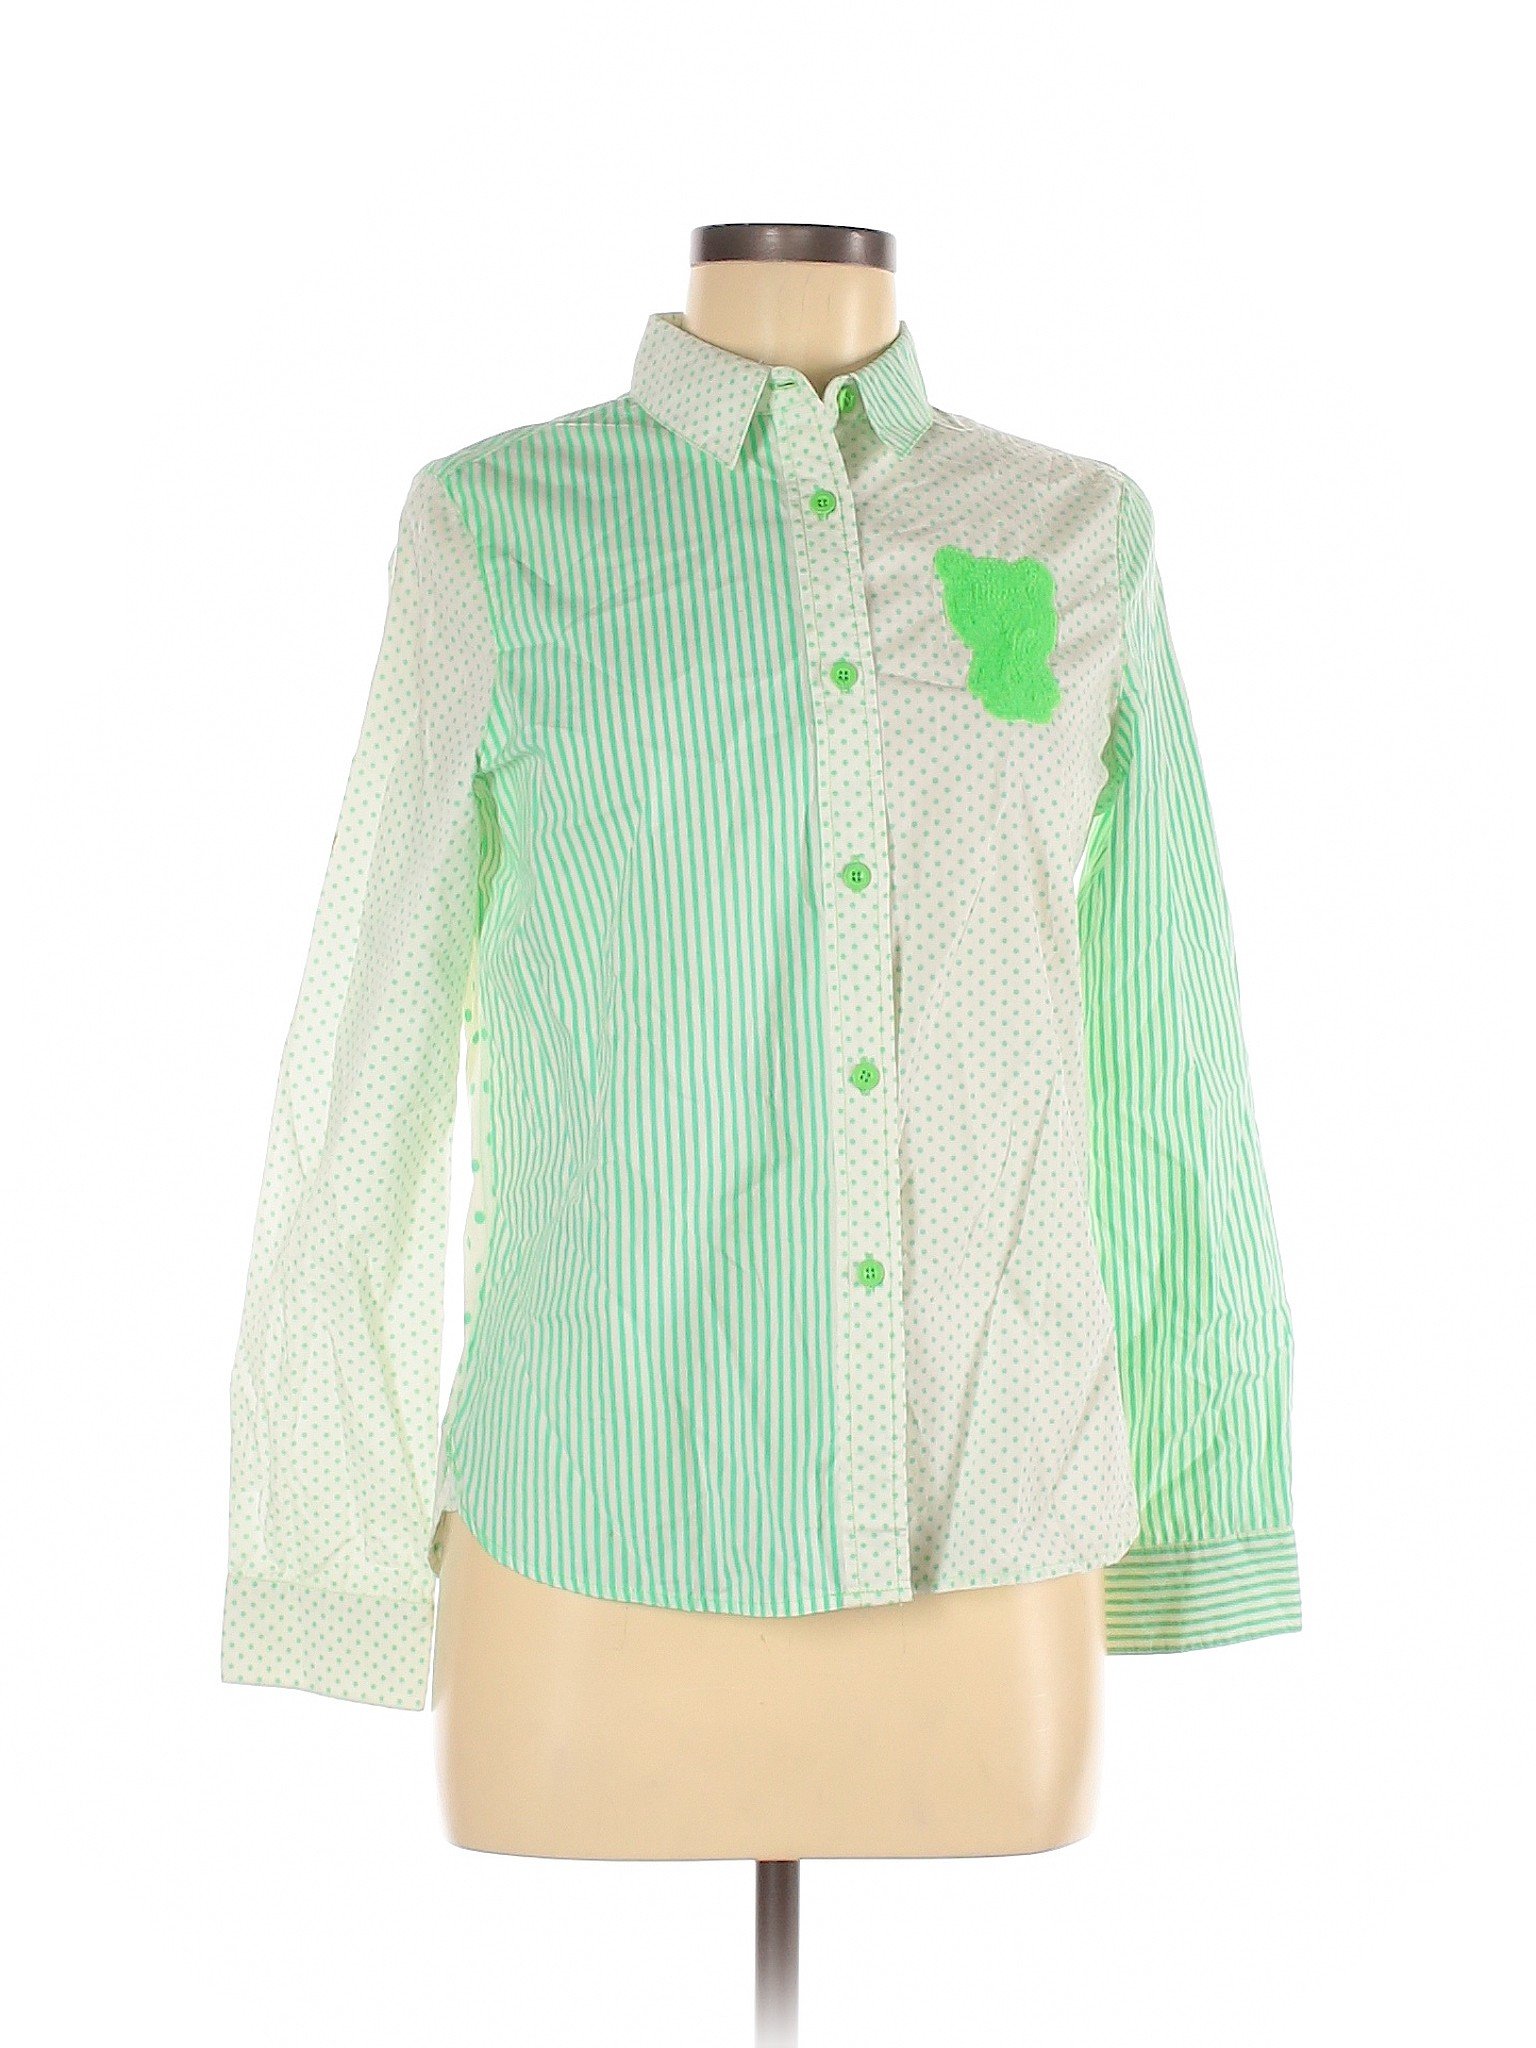 Assorted Brands Women Green Long Sleeve Button-Down Shirt M | eBay